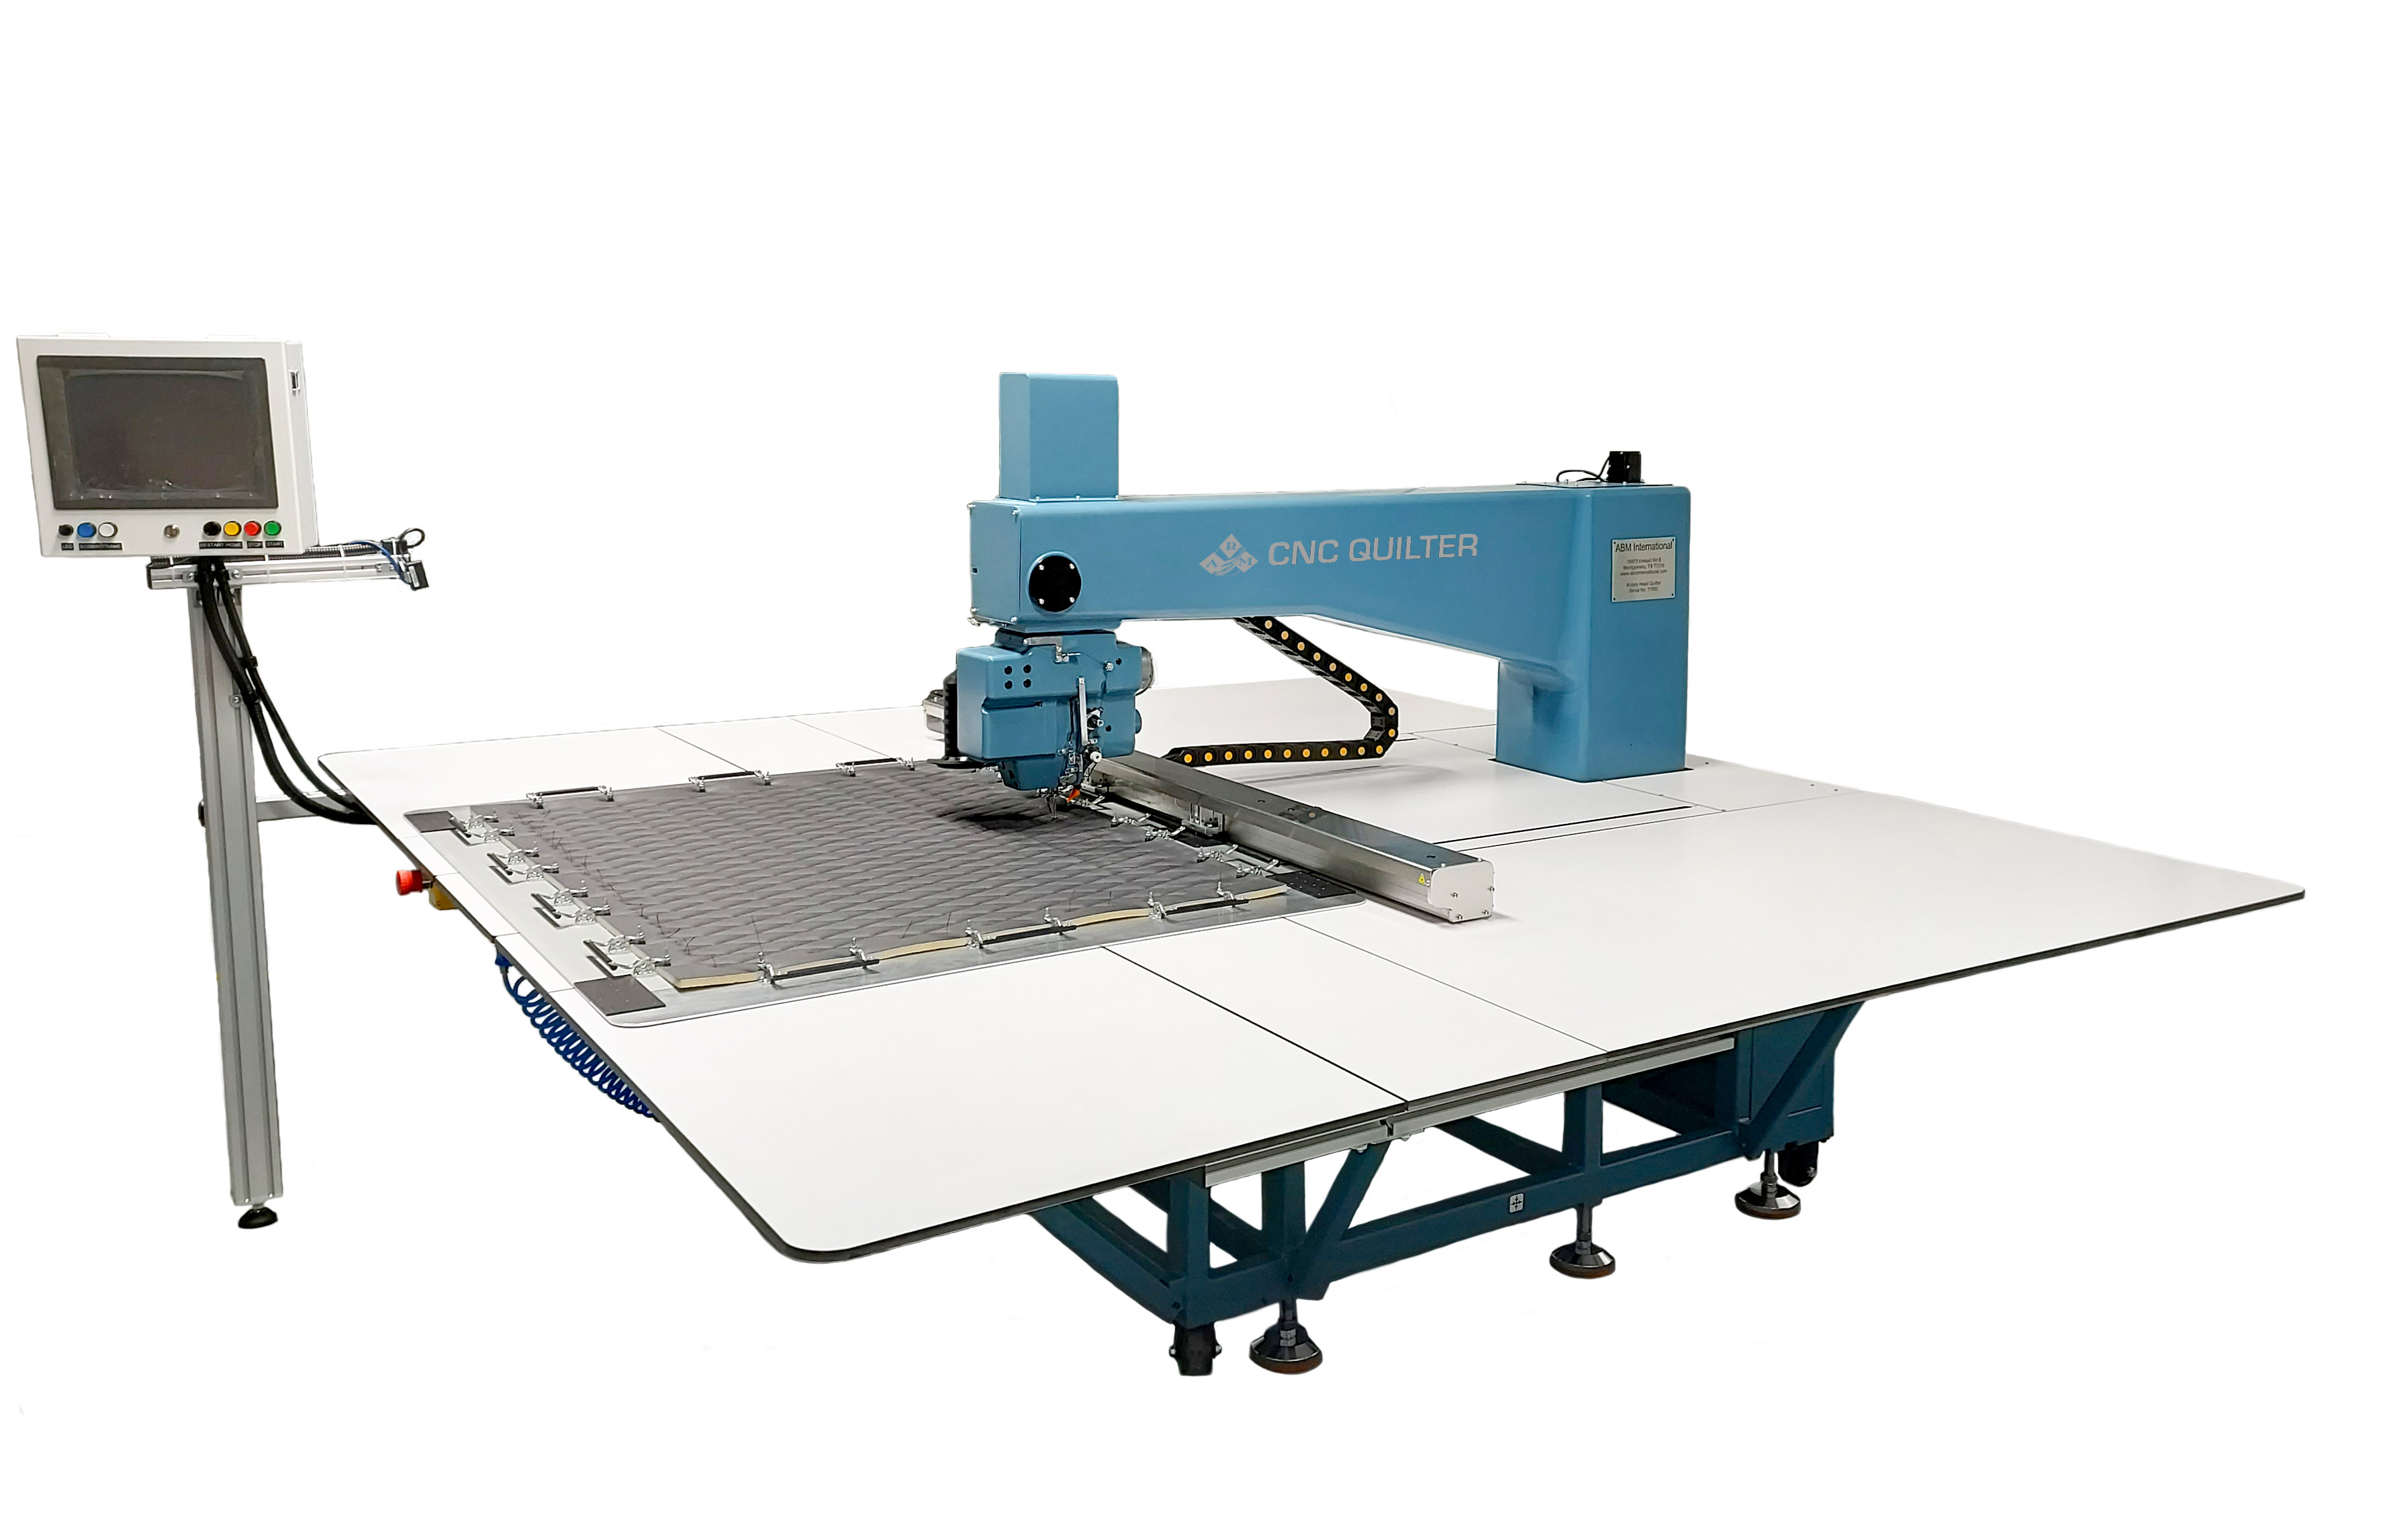 Turn Head CNC Sewing Machine